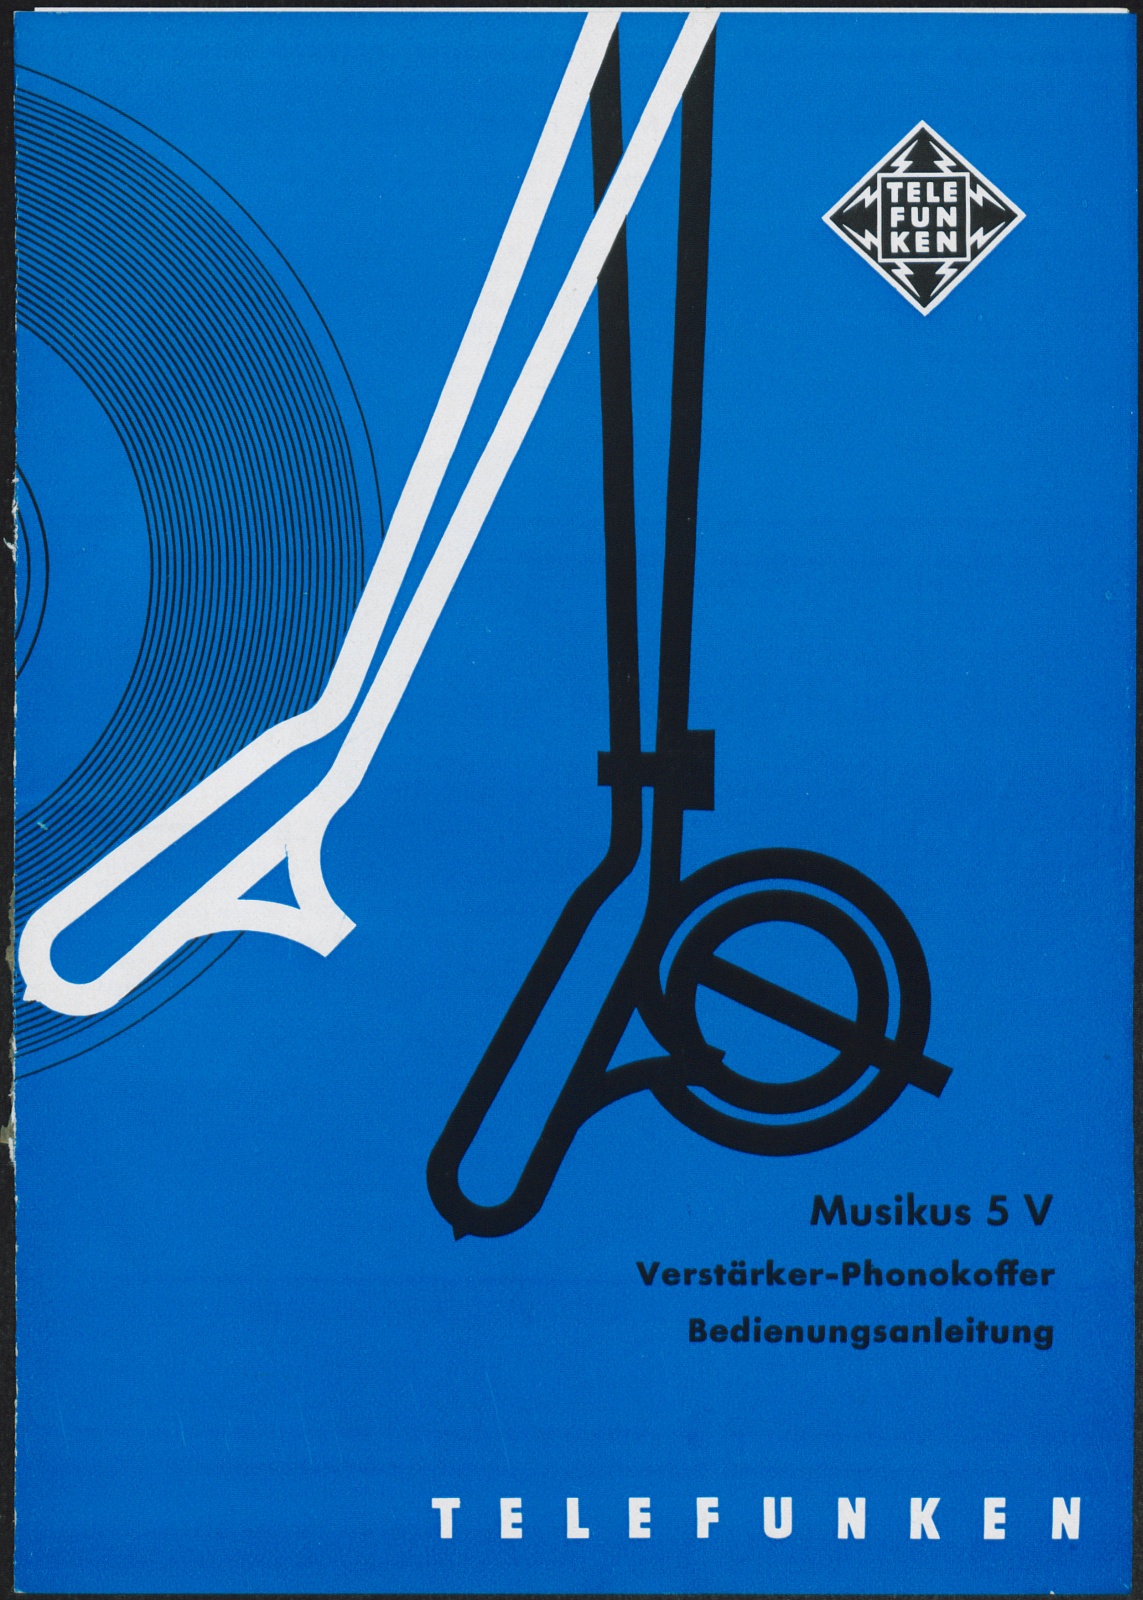 Bedienungsanleitung: Bedienungsanleitung für den Telefunken Musikus 5 V Verstärker-Phonokoffer (Stiftung Deutsches Technikmuseum Berlin CC0)